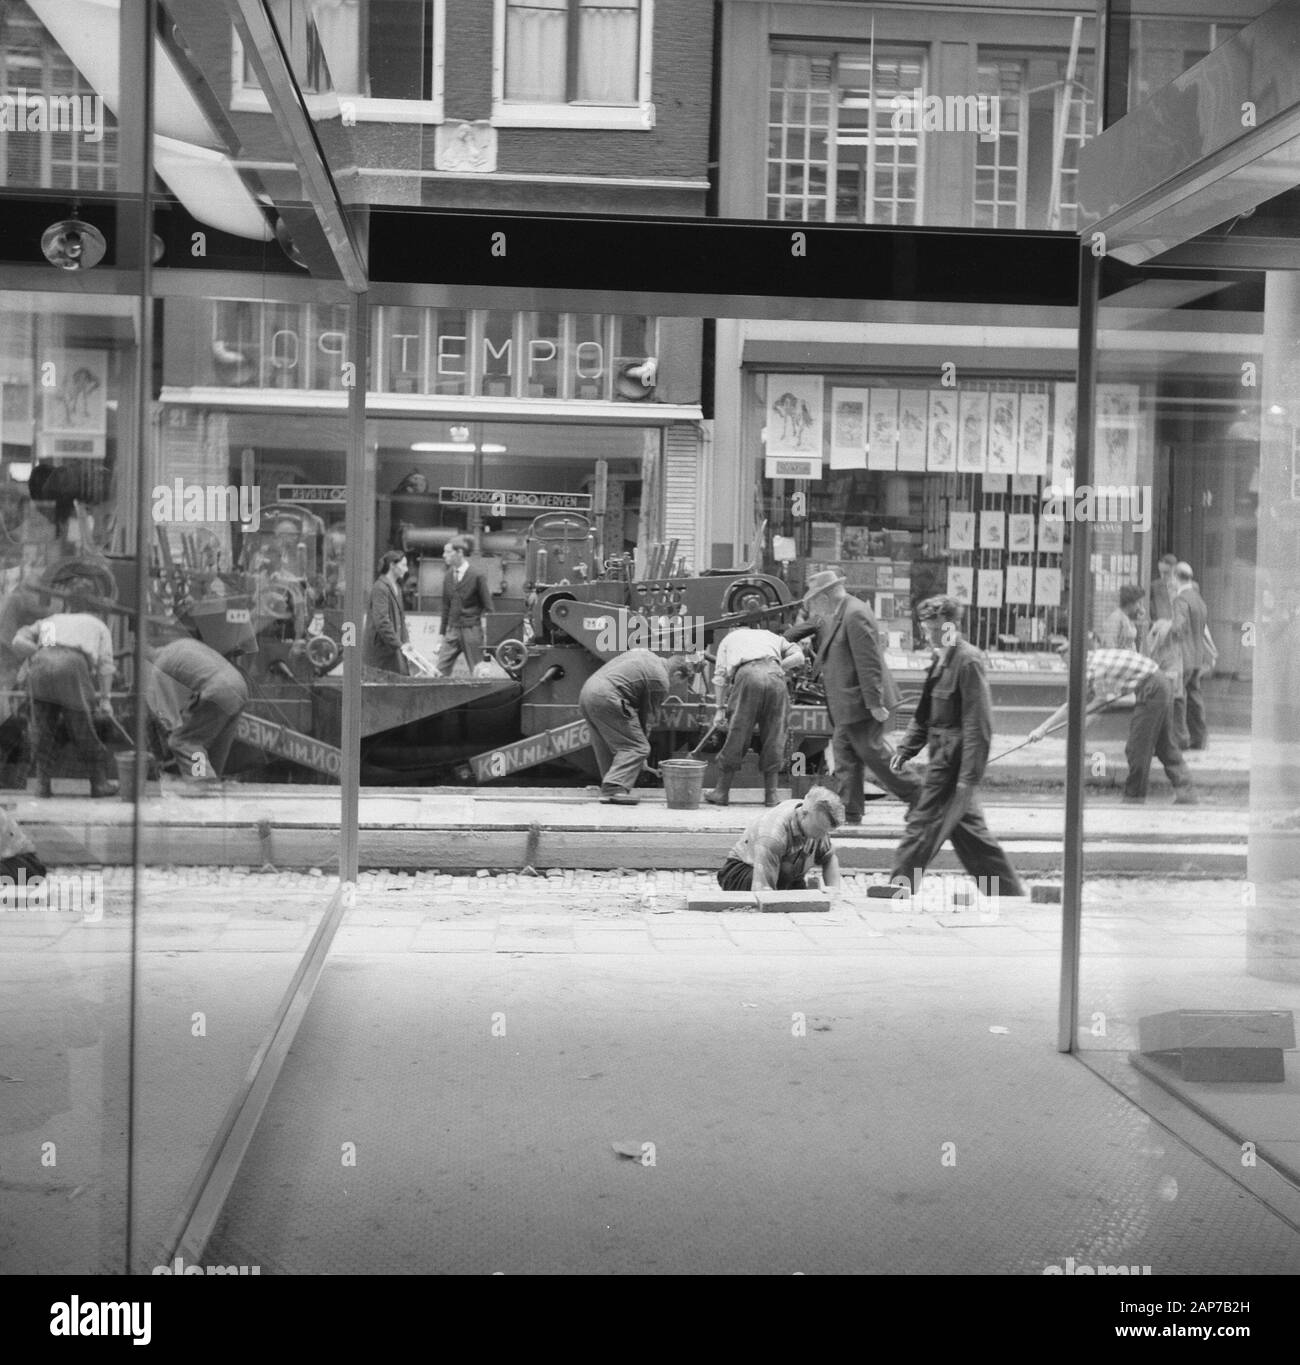 L'asphalte de la Leidsestraat, fixant la couche d'asphalte Date : 19 septembre 1960 Lieu : Amsterdam, Noord-Holland Mots-clés : Asphalte, couches d'asphalte Banque D'Images